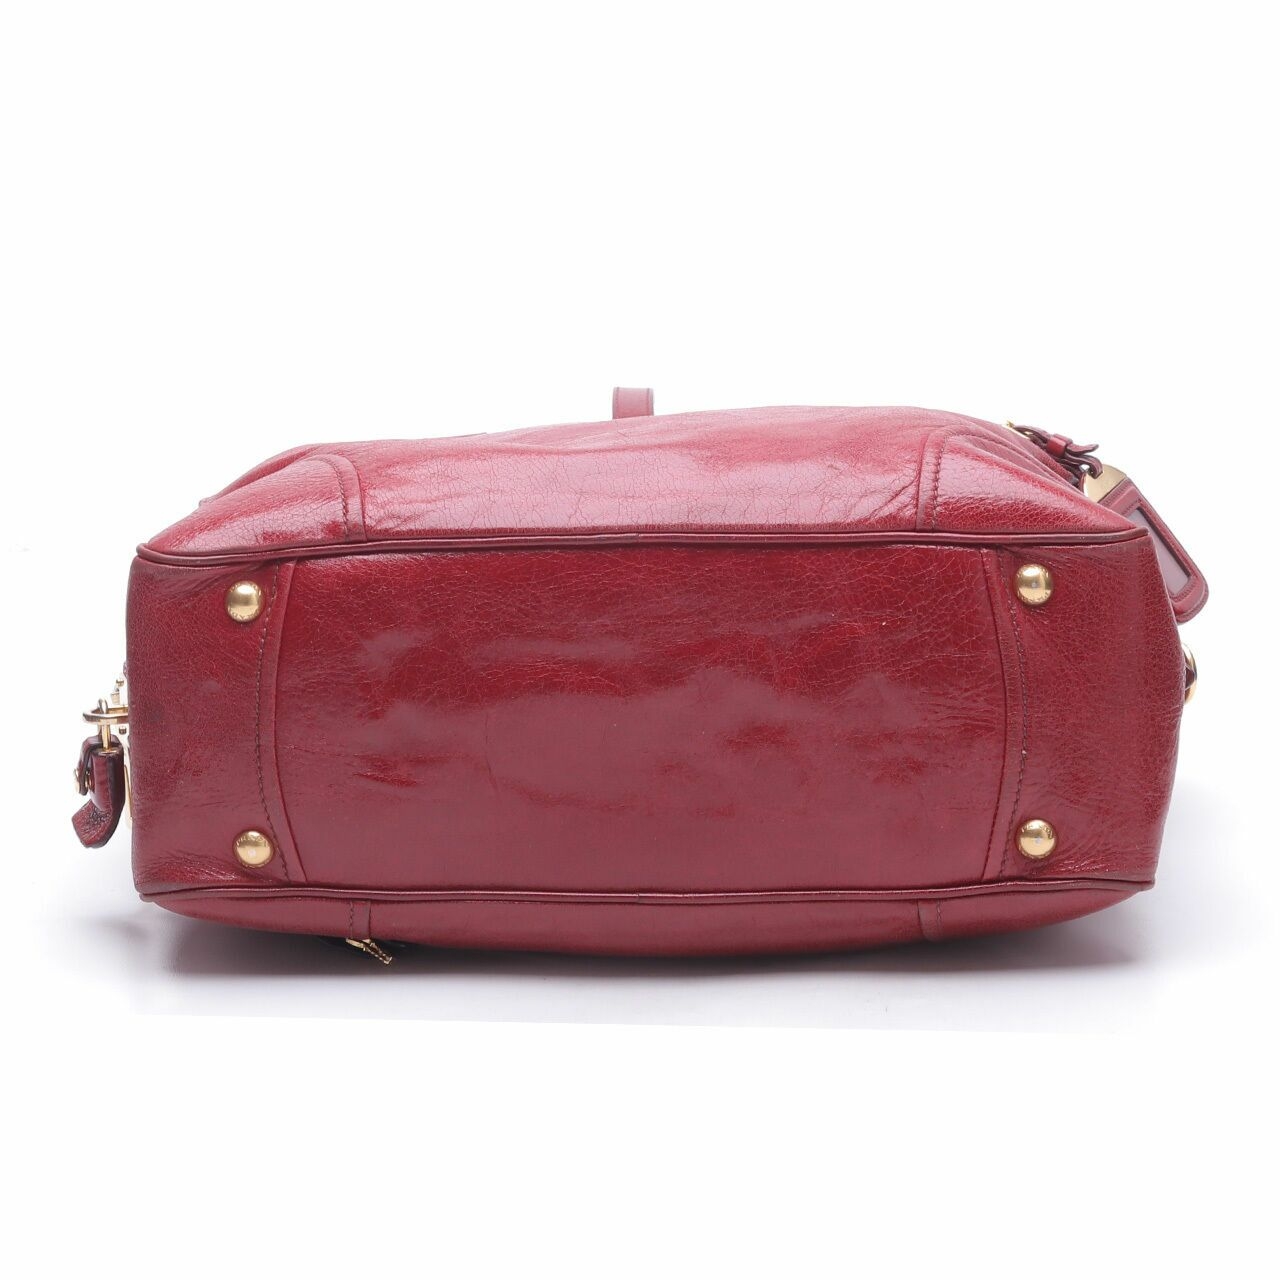 Prada Vitello Shine Rubino Bauletto Red Satchel Bag